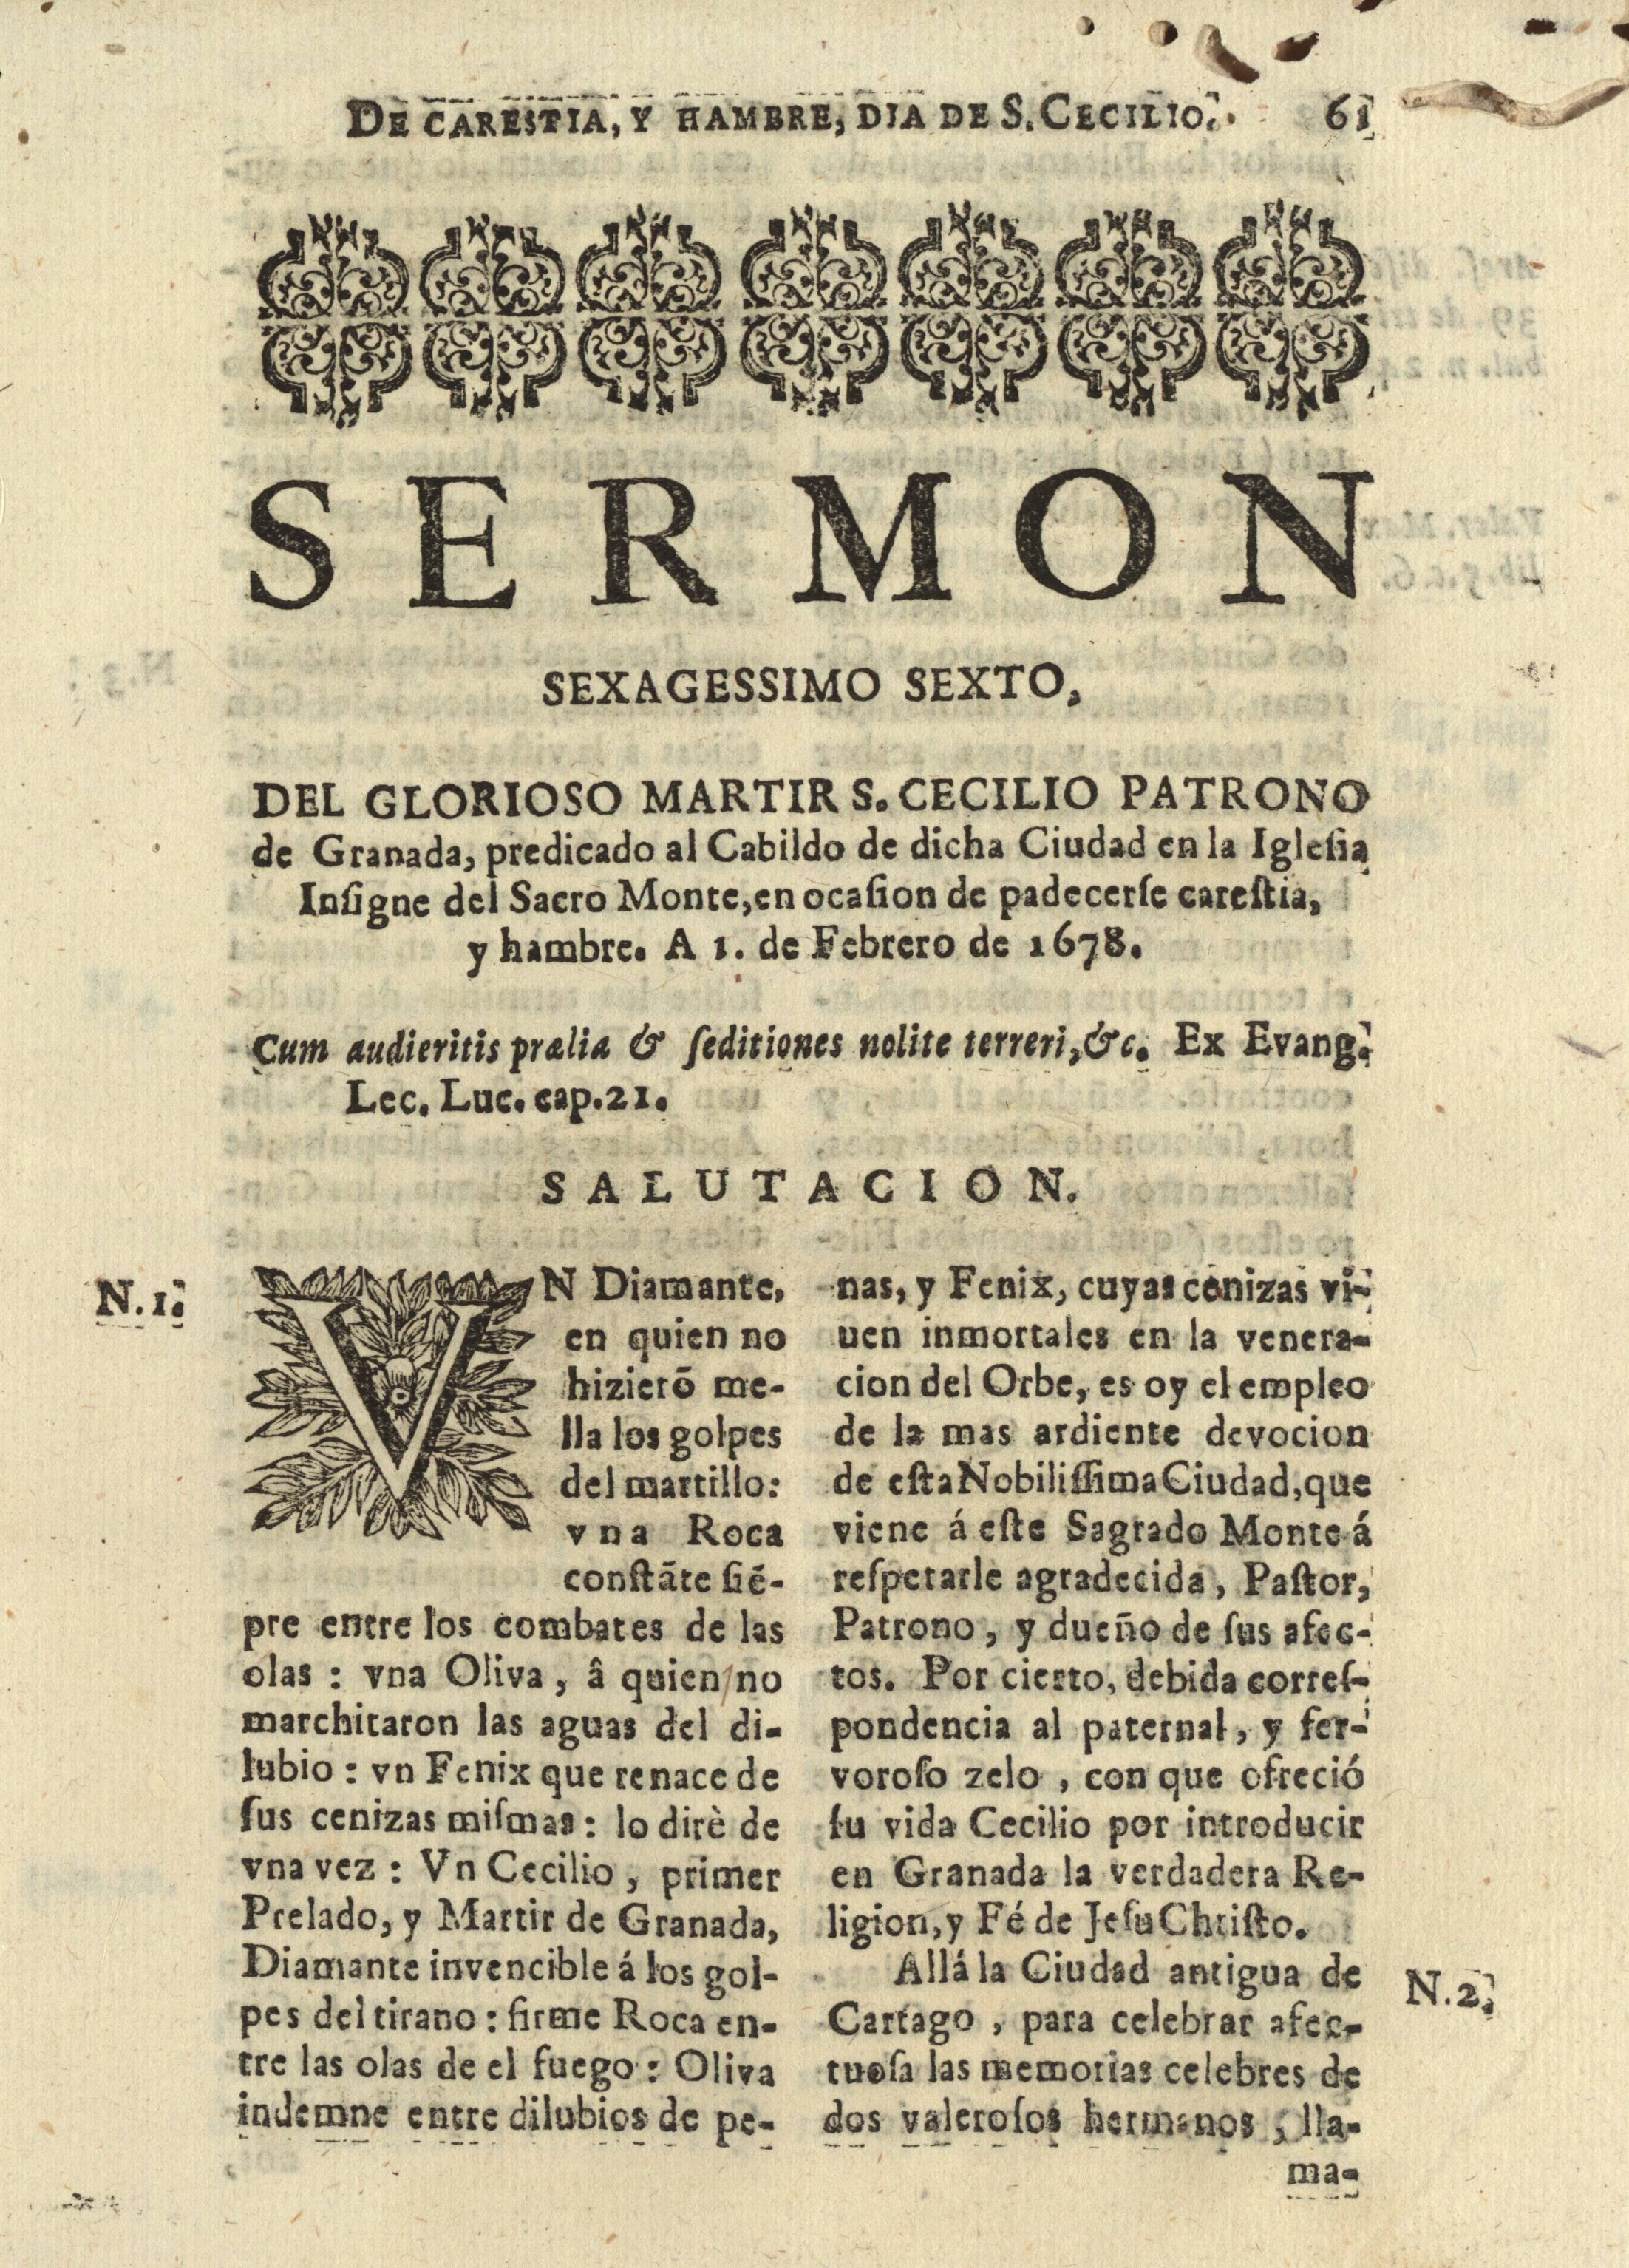 Sermon sexagessimo sexto, del glorioso martir S.Cecilio patrono de Granada ...